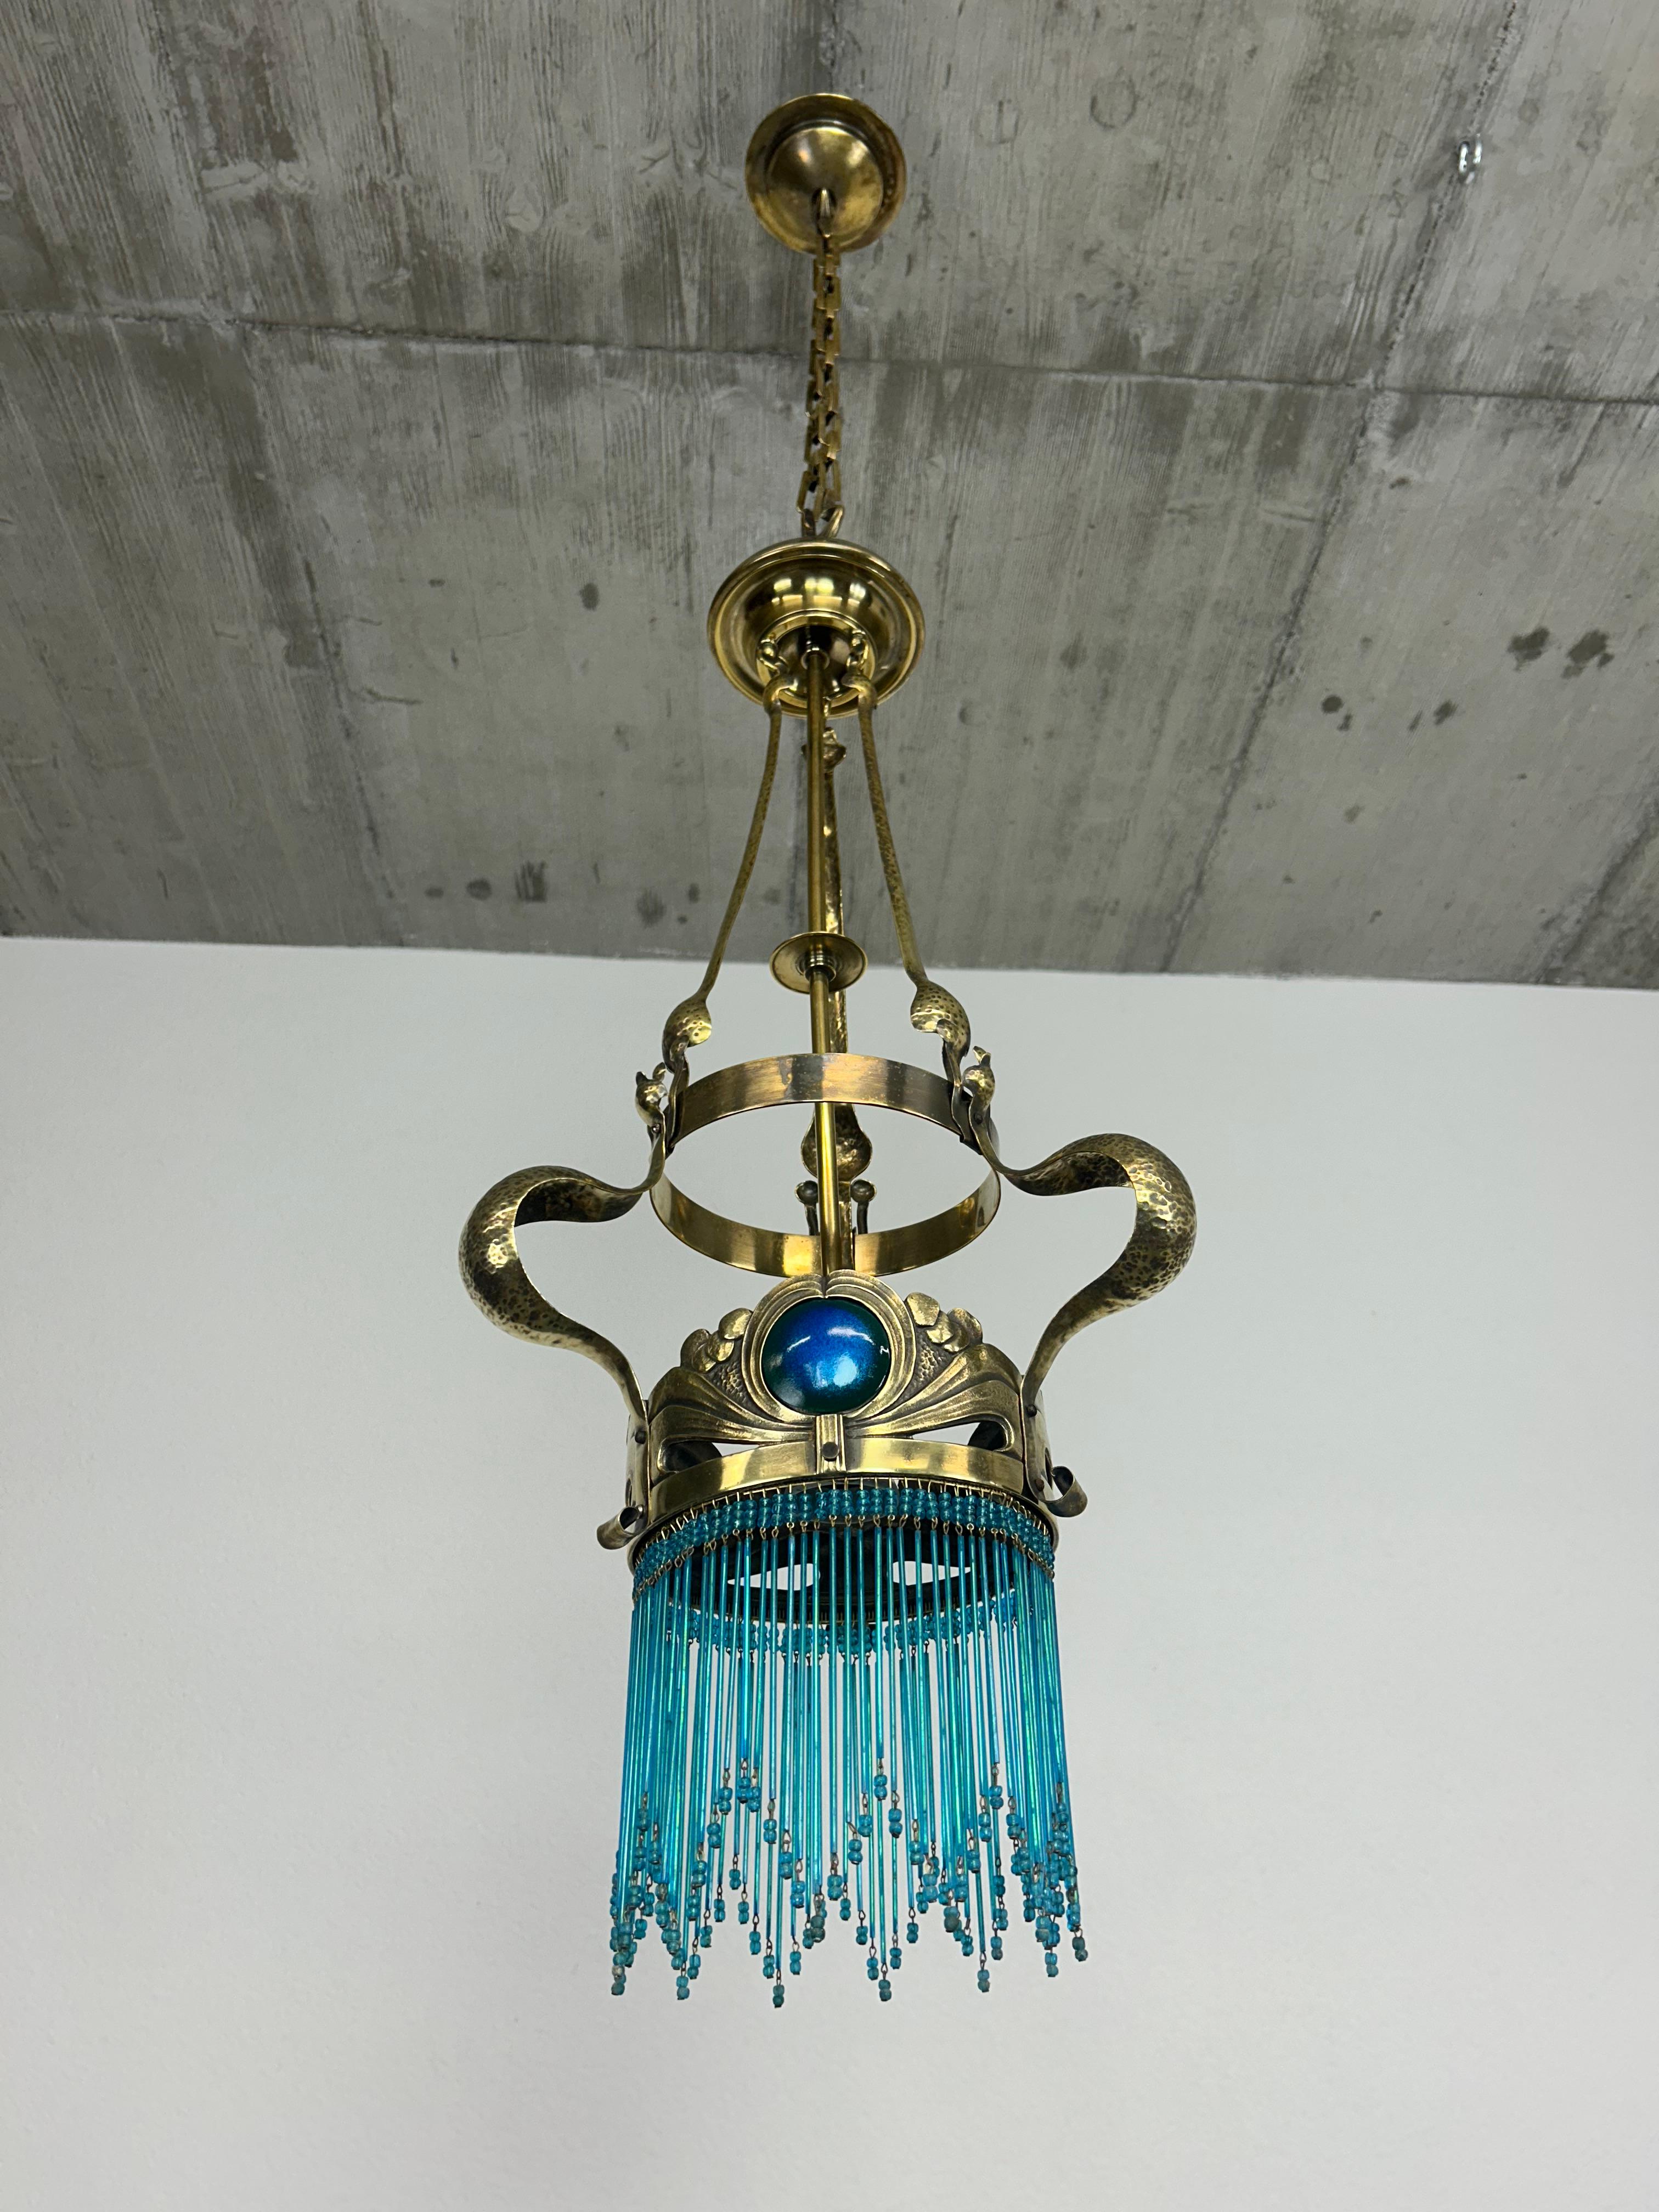 Jugendstil brass chandelier by Koloman Moser in excellent condition.